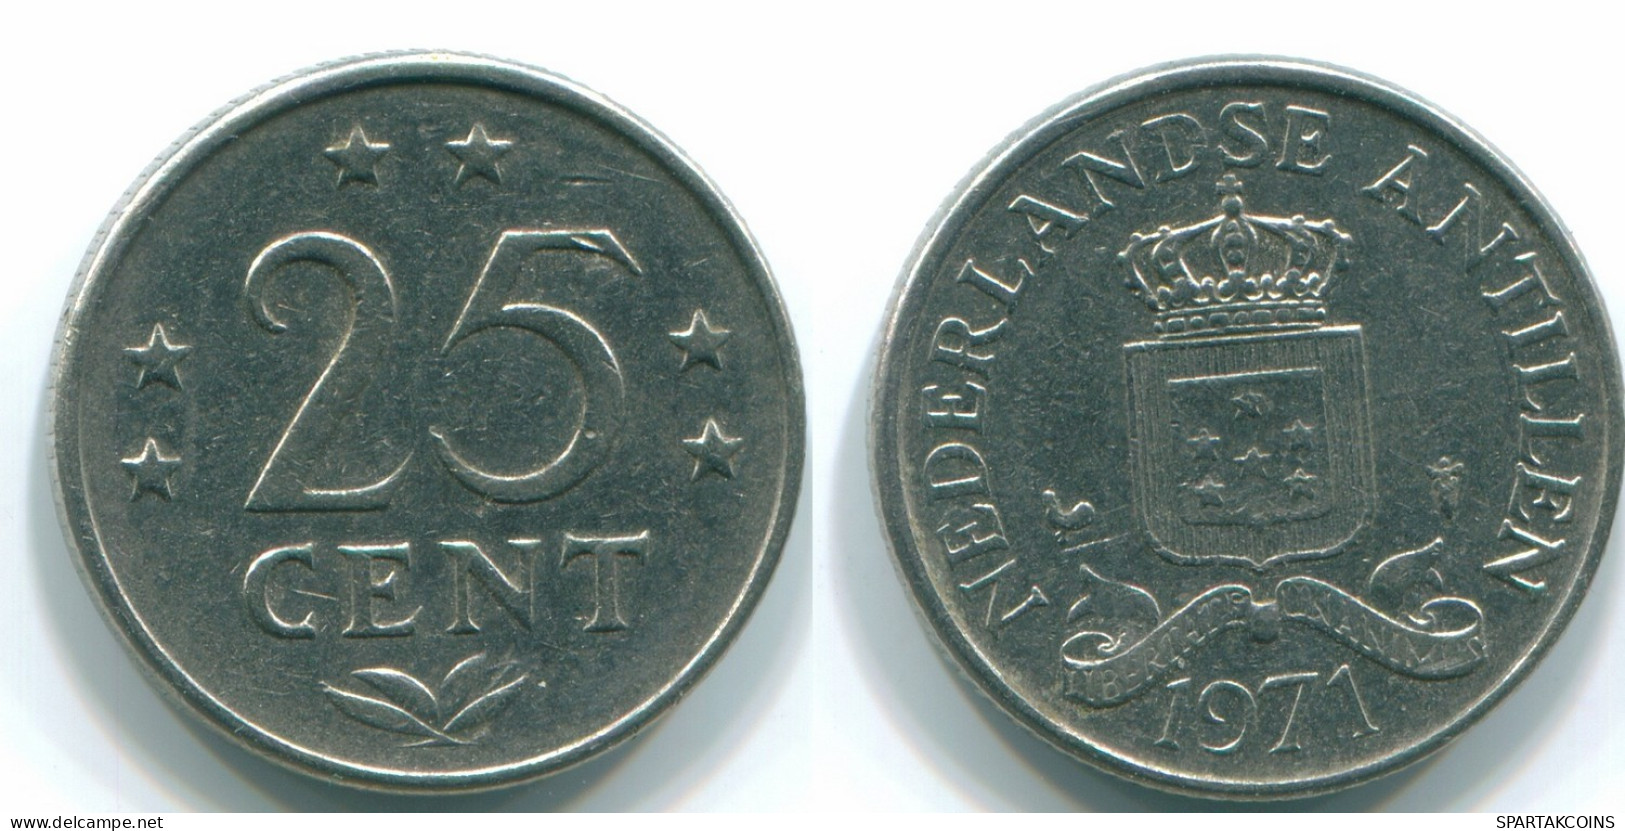 25 CENTS 1971 NETHERLANDS ANTILLES Nickel Colonial Coin #S11548.U.A - Antillas Neerlandesas